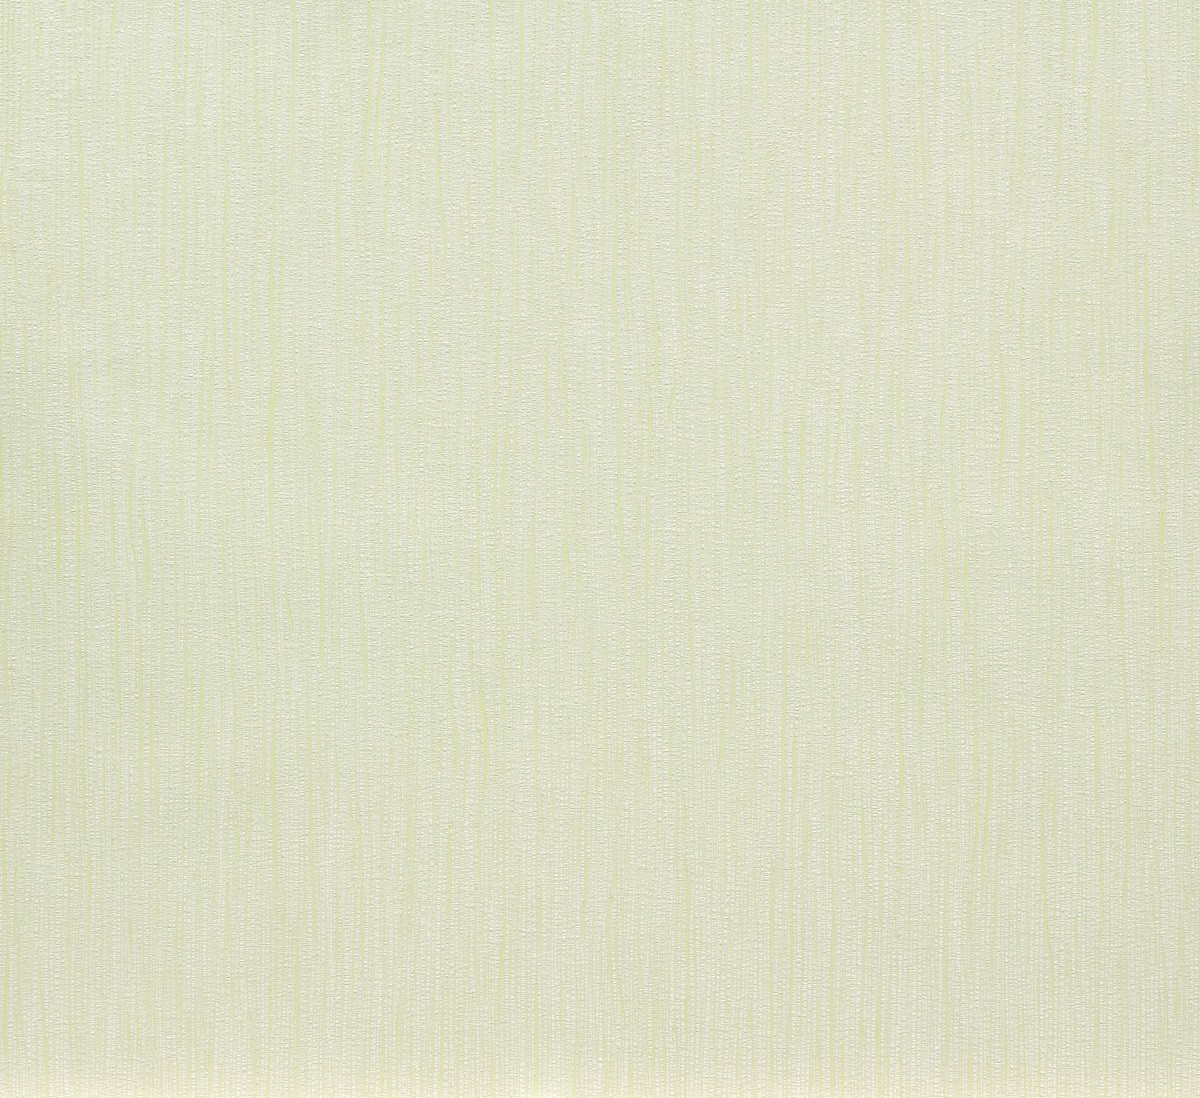 Vliestapete Strich Design blassgrün weiß Marburg 56526